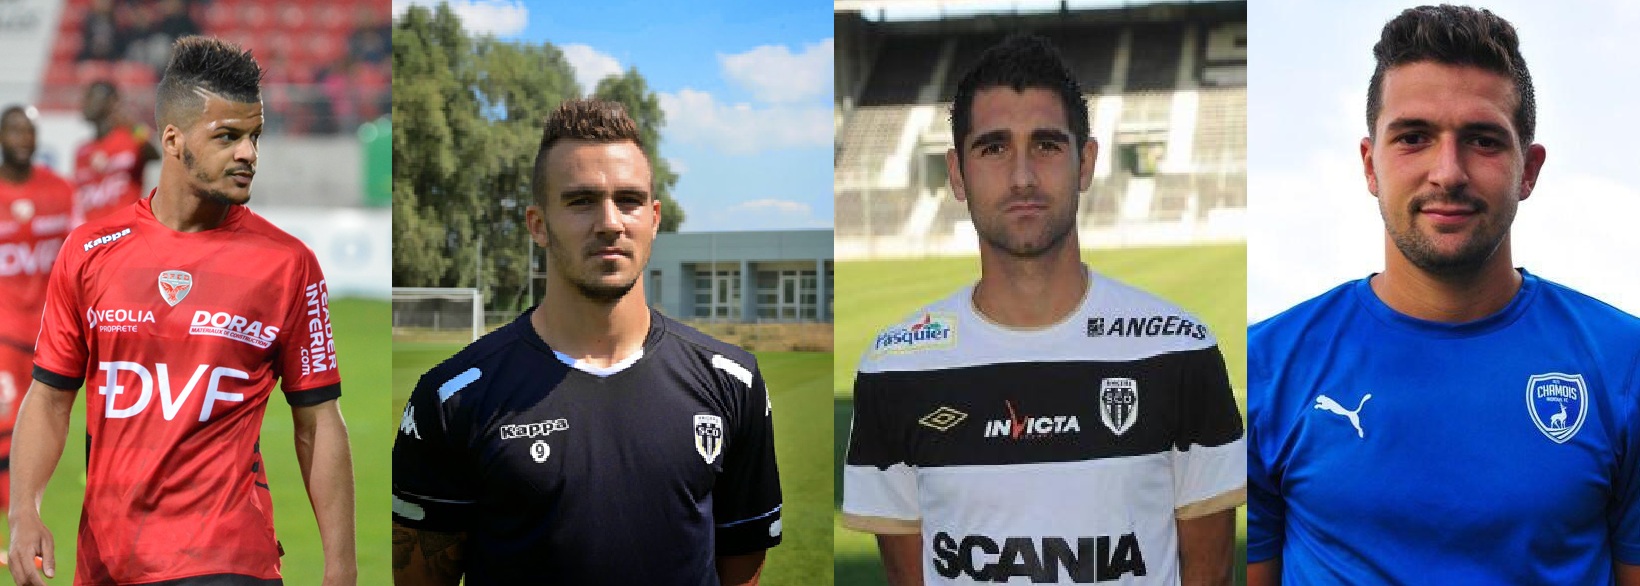 Cfa Girondins : Ces joueurs formés au club qui évoluent en Ligue 2 (2/2) - Formation Girondins 